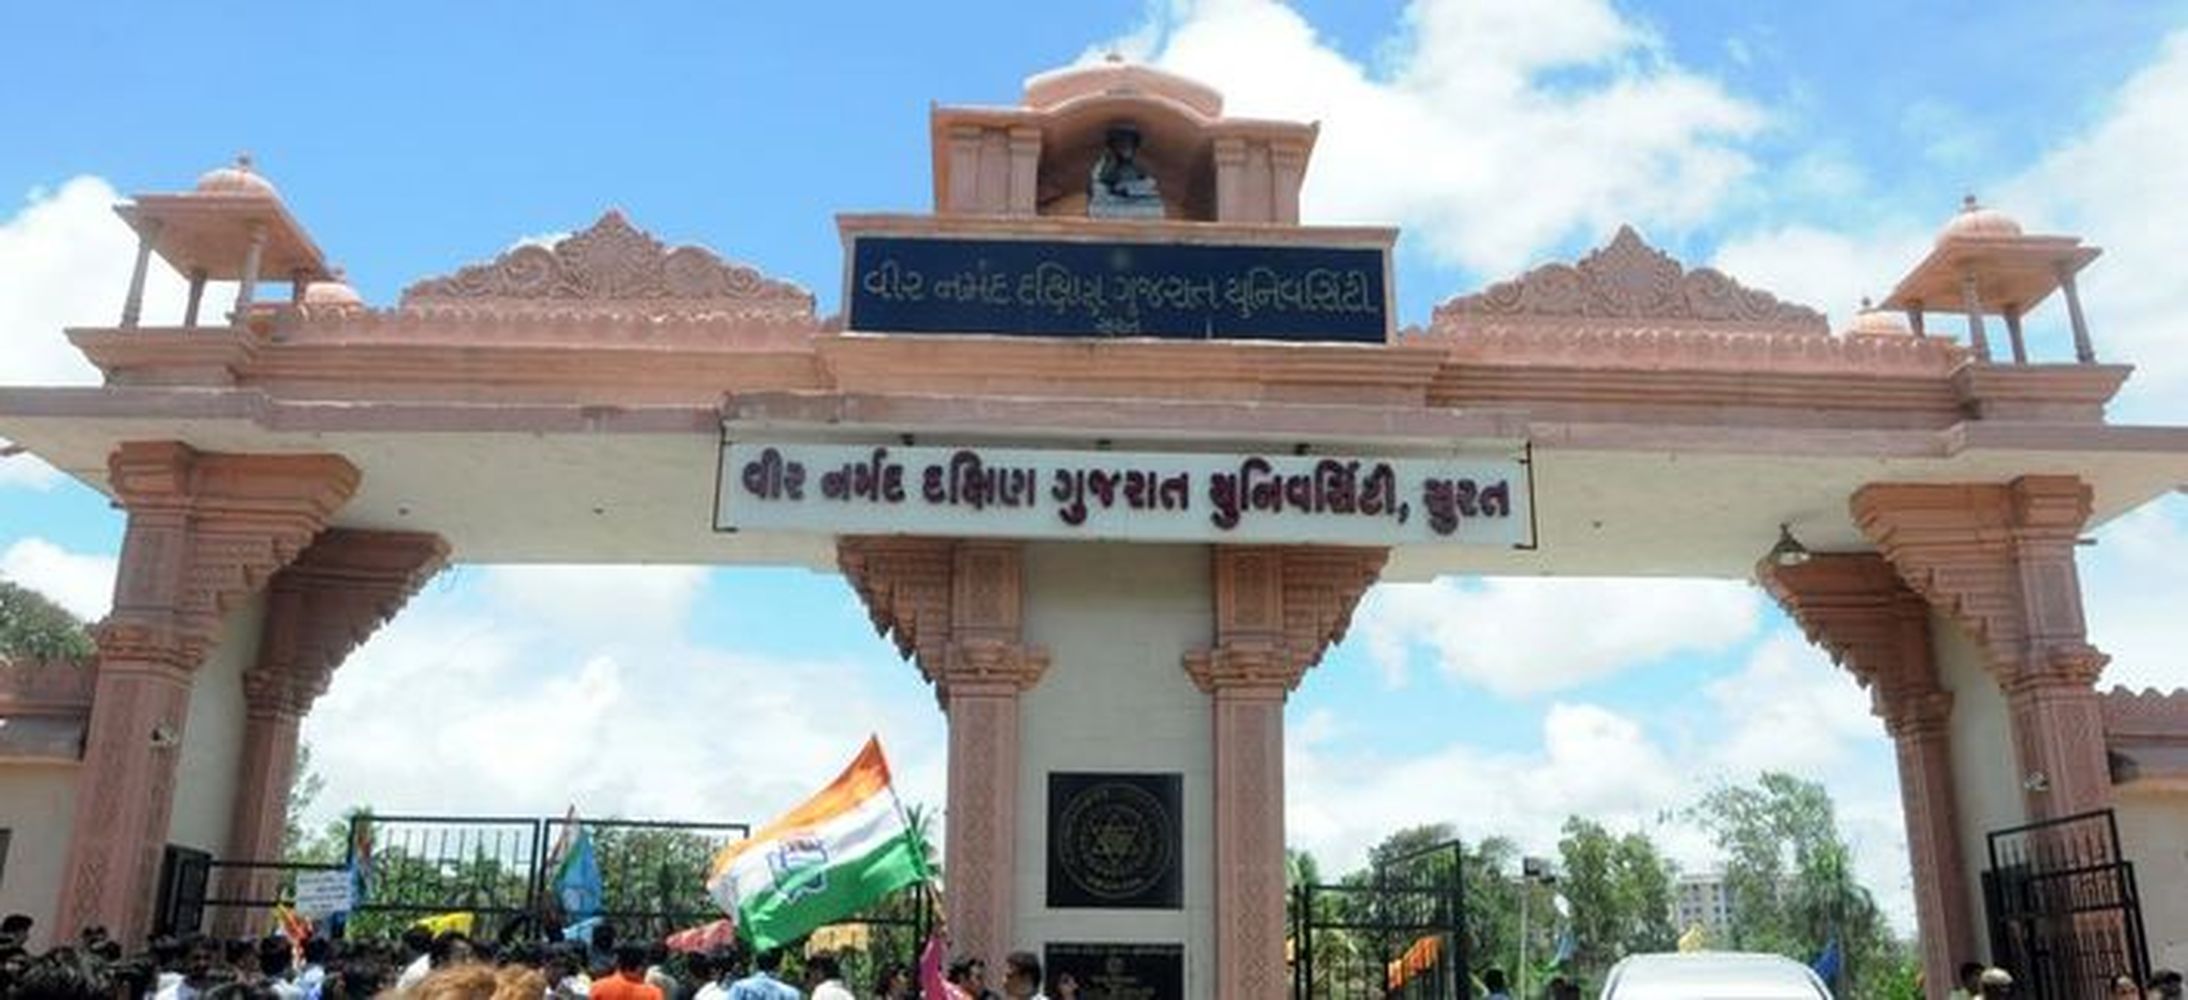 SURAT VIDEO : गुजरात के 13 विश्वविद्यालयों में नियुक्ति को लेकर गड़बड़ी की
शिकायत